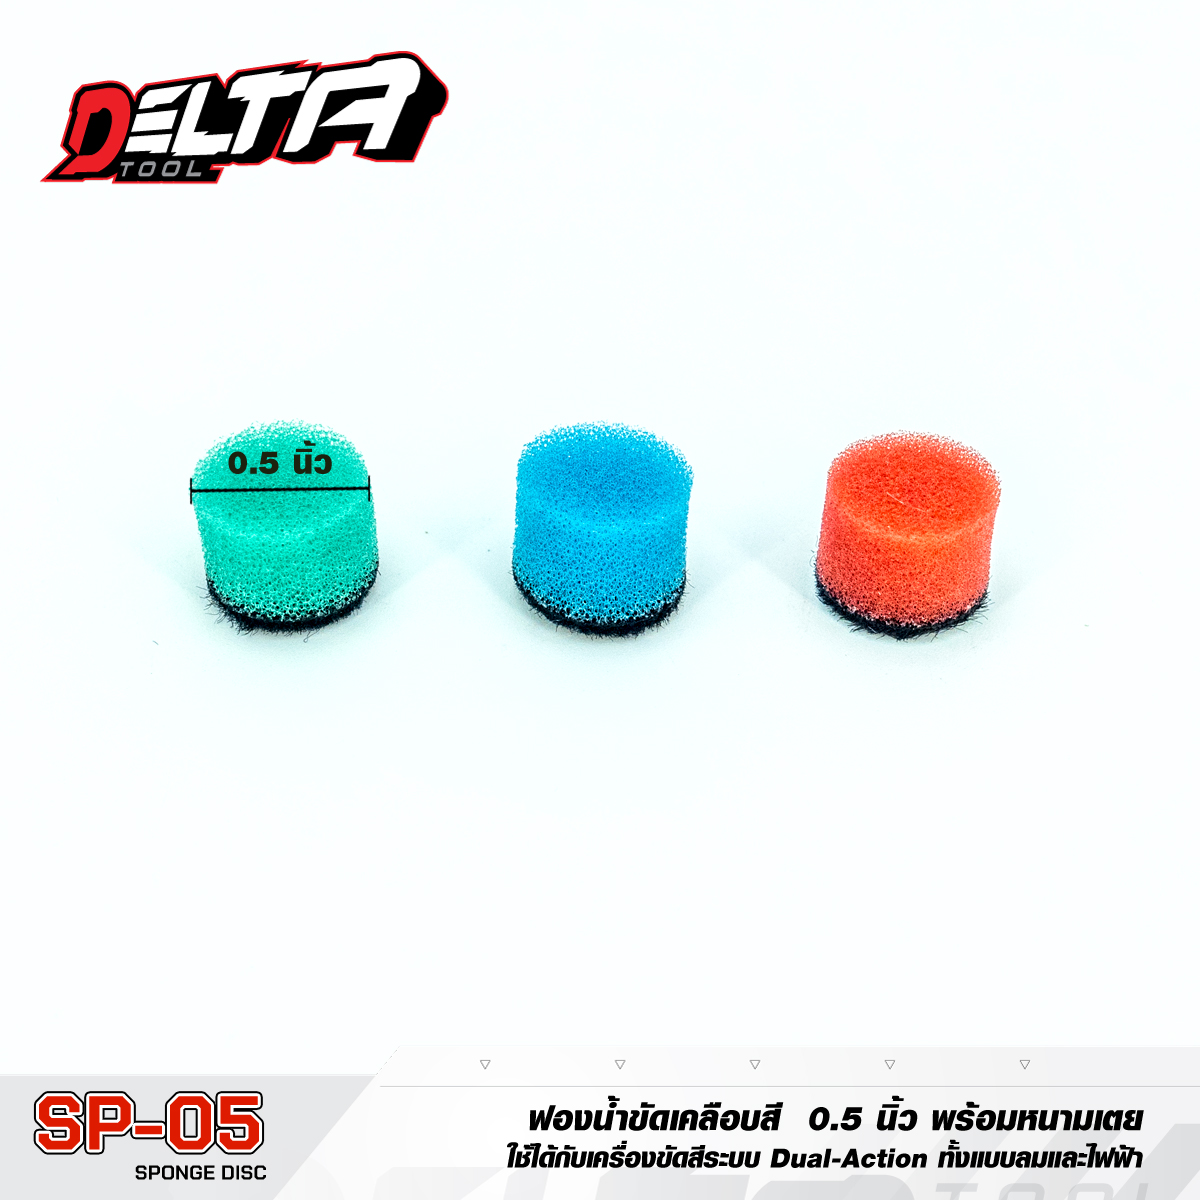 sp05_ฟองน้ำ 0.5 นิ้ว ฟองน้ำขัดสี 3 ชิ้น ใช้กับสว่านไฟฟ้าหรือเครื่องขัดสี Mini Polishing Kit